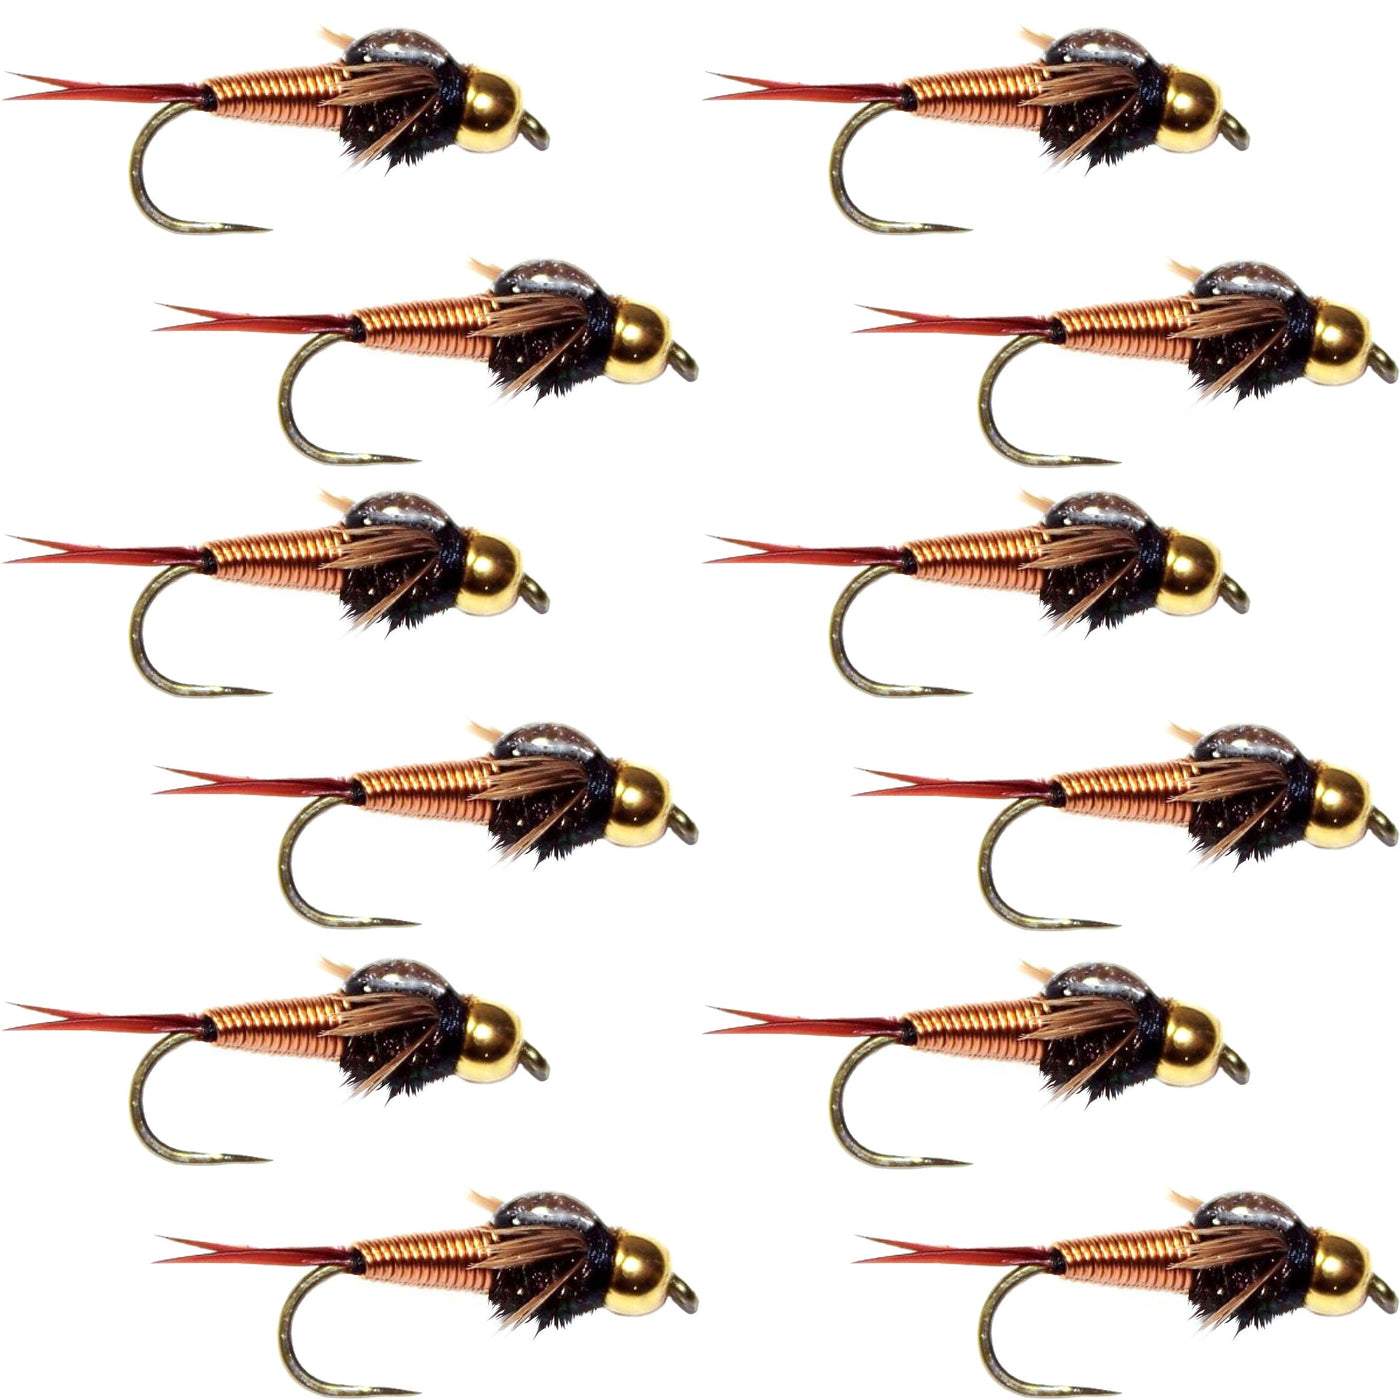 Barbless Bead Head Copper John Nymph Fly 1 Dozen  Fishing Flies -  Hook Size 10